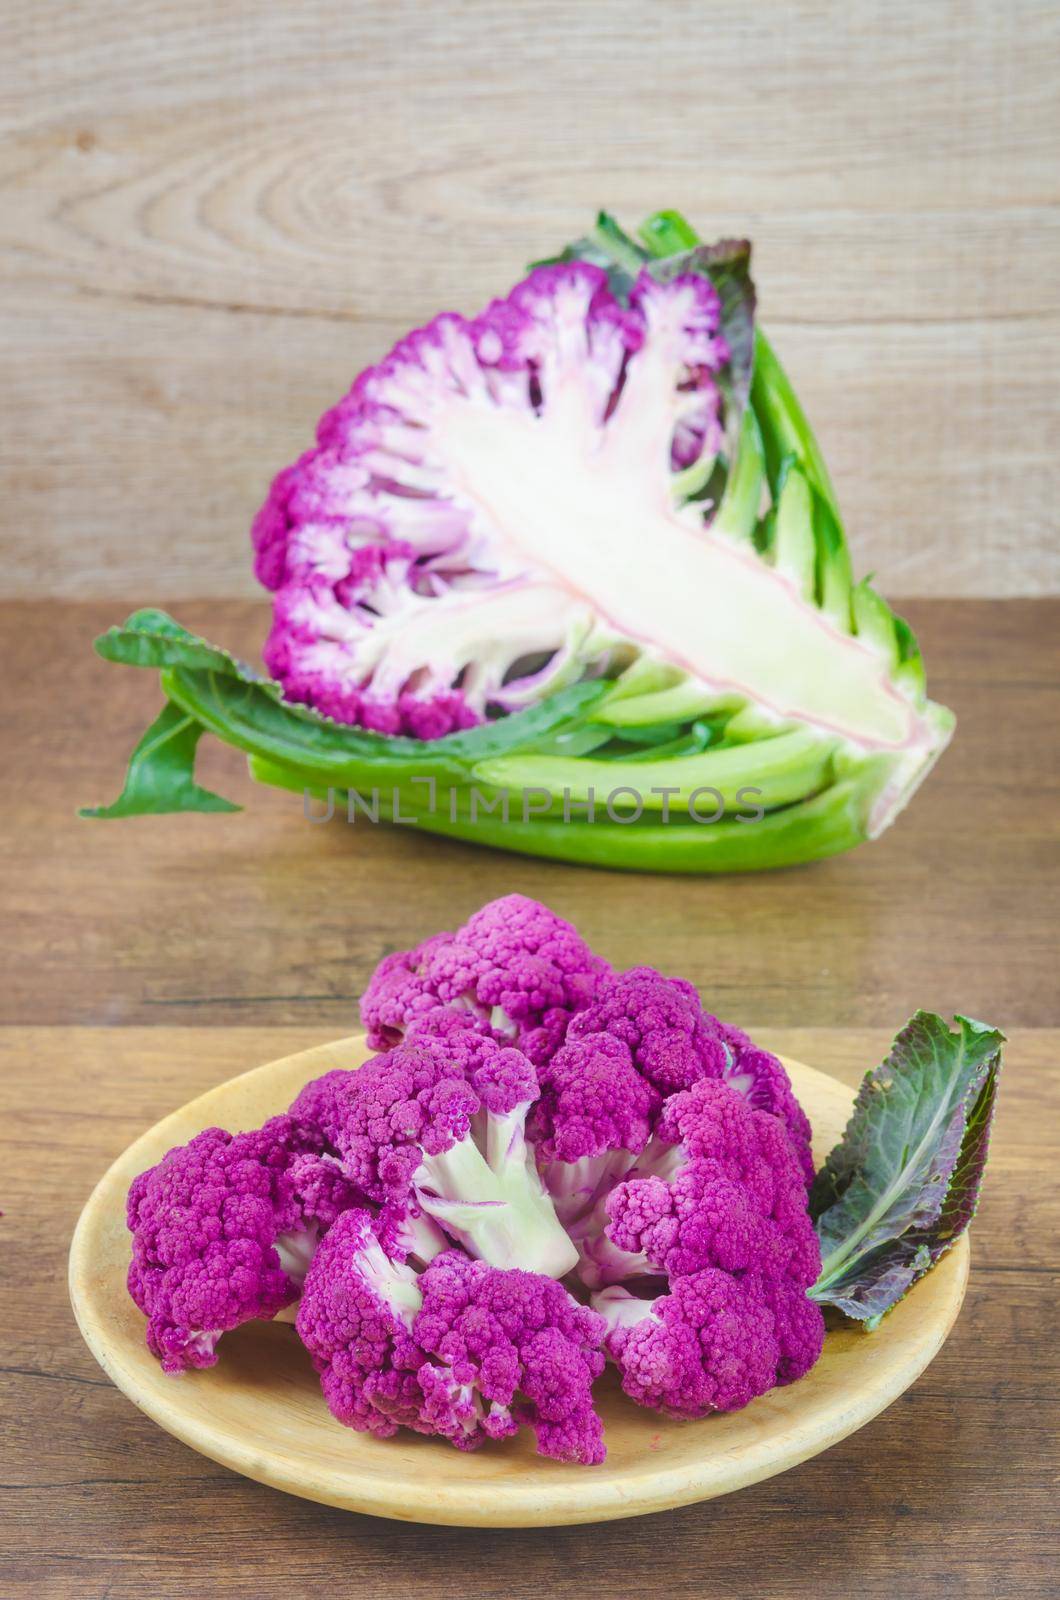 The Freshness Purple Cauliflower on wooden background.